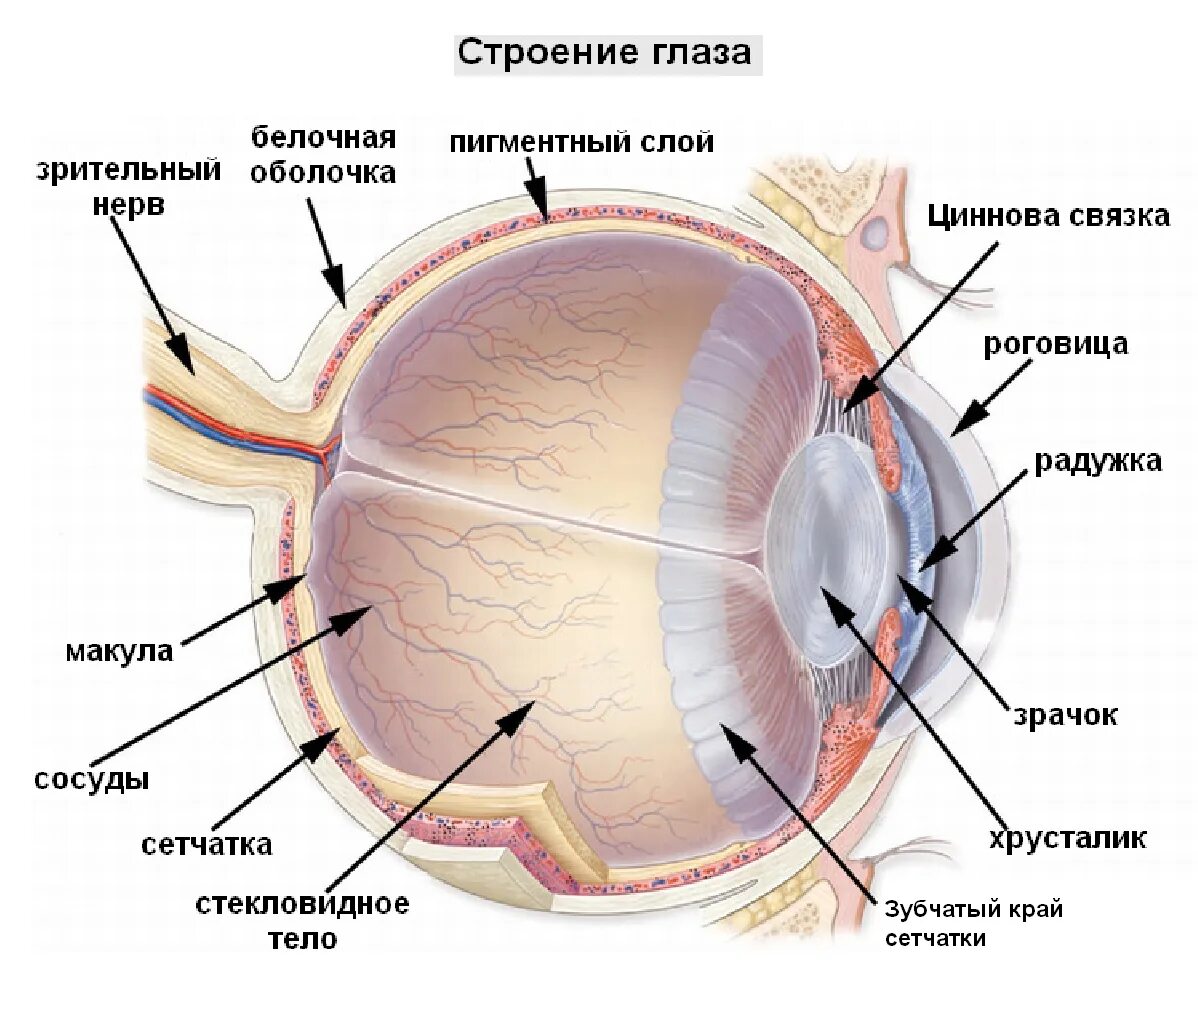 Оболочки глазного яблока у человека. Сетчатка оболочка глаза. Строение глаза послойно. Строение глазного яблока и сетчатки. Структура глазного яблока схема.